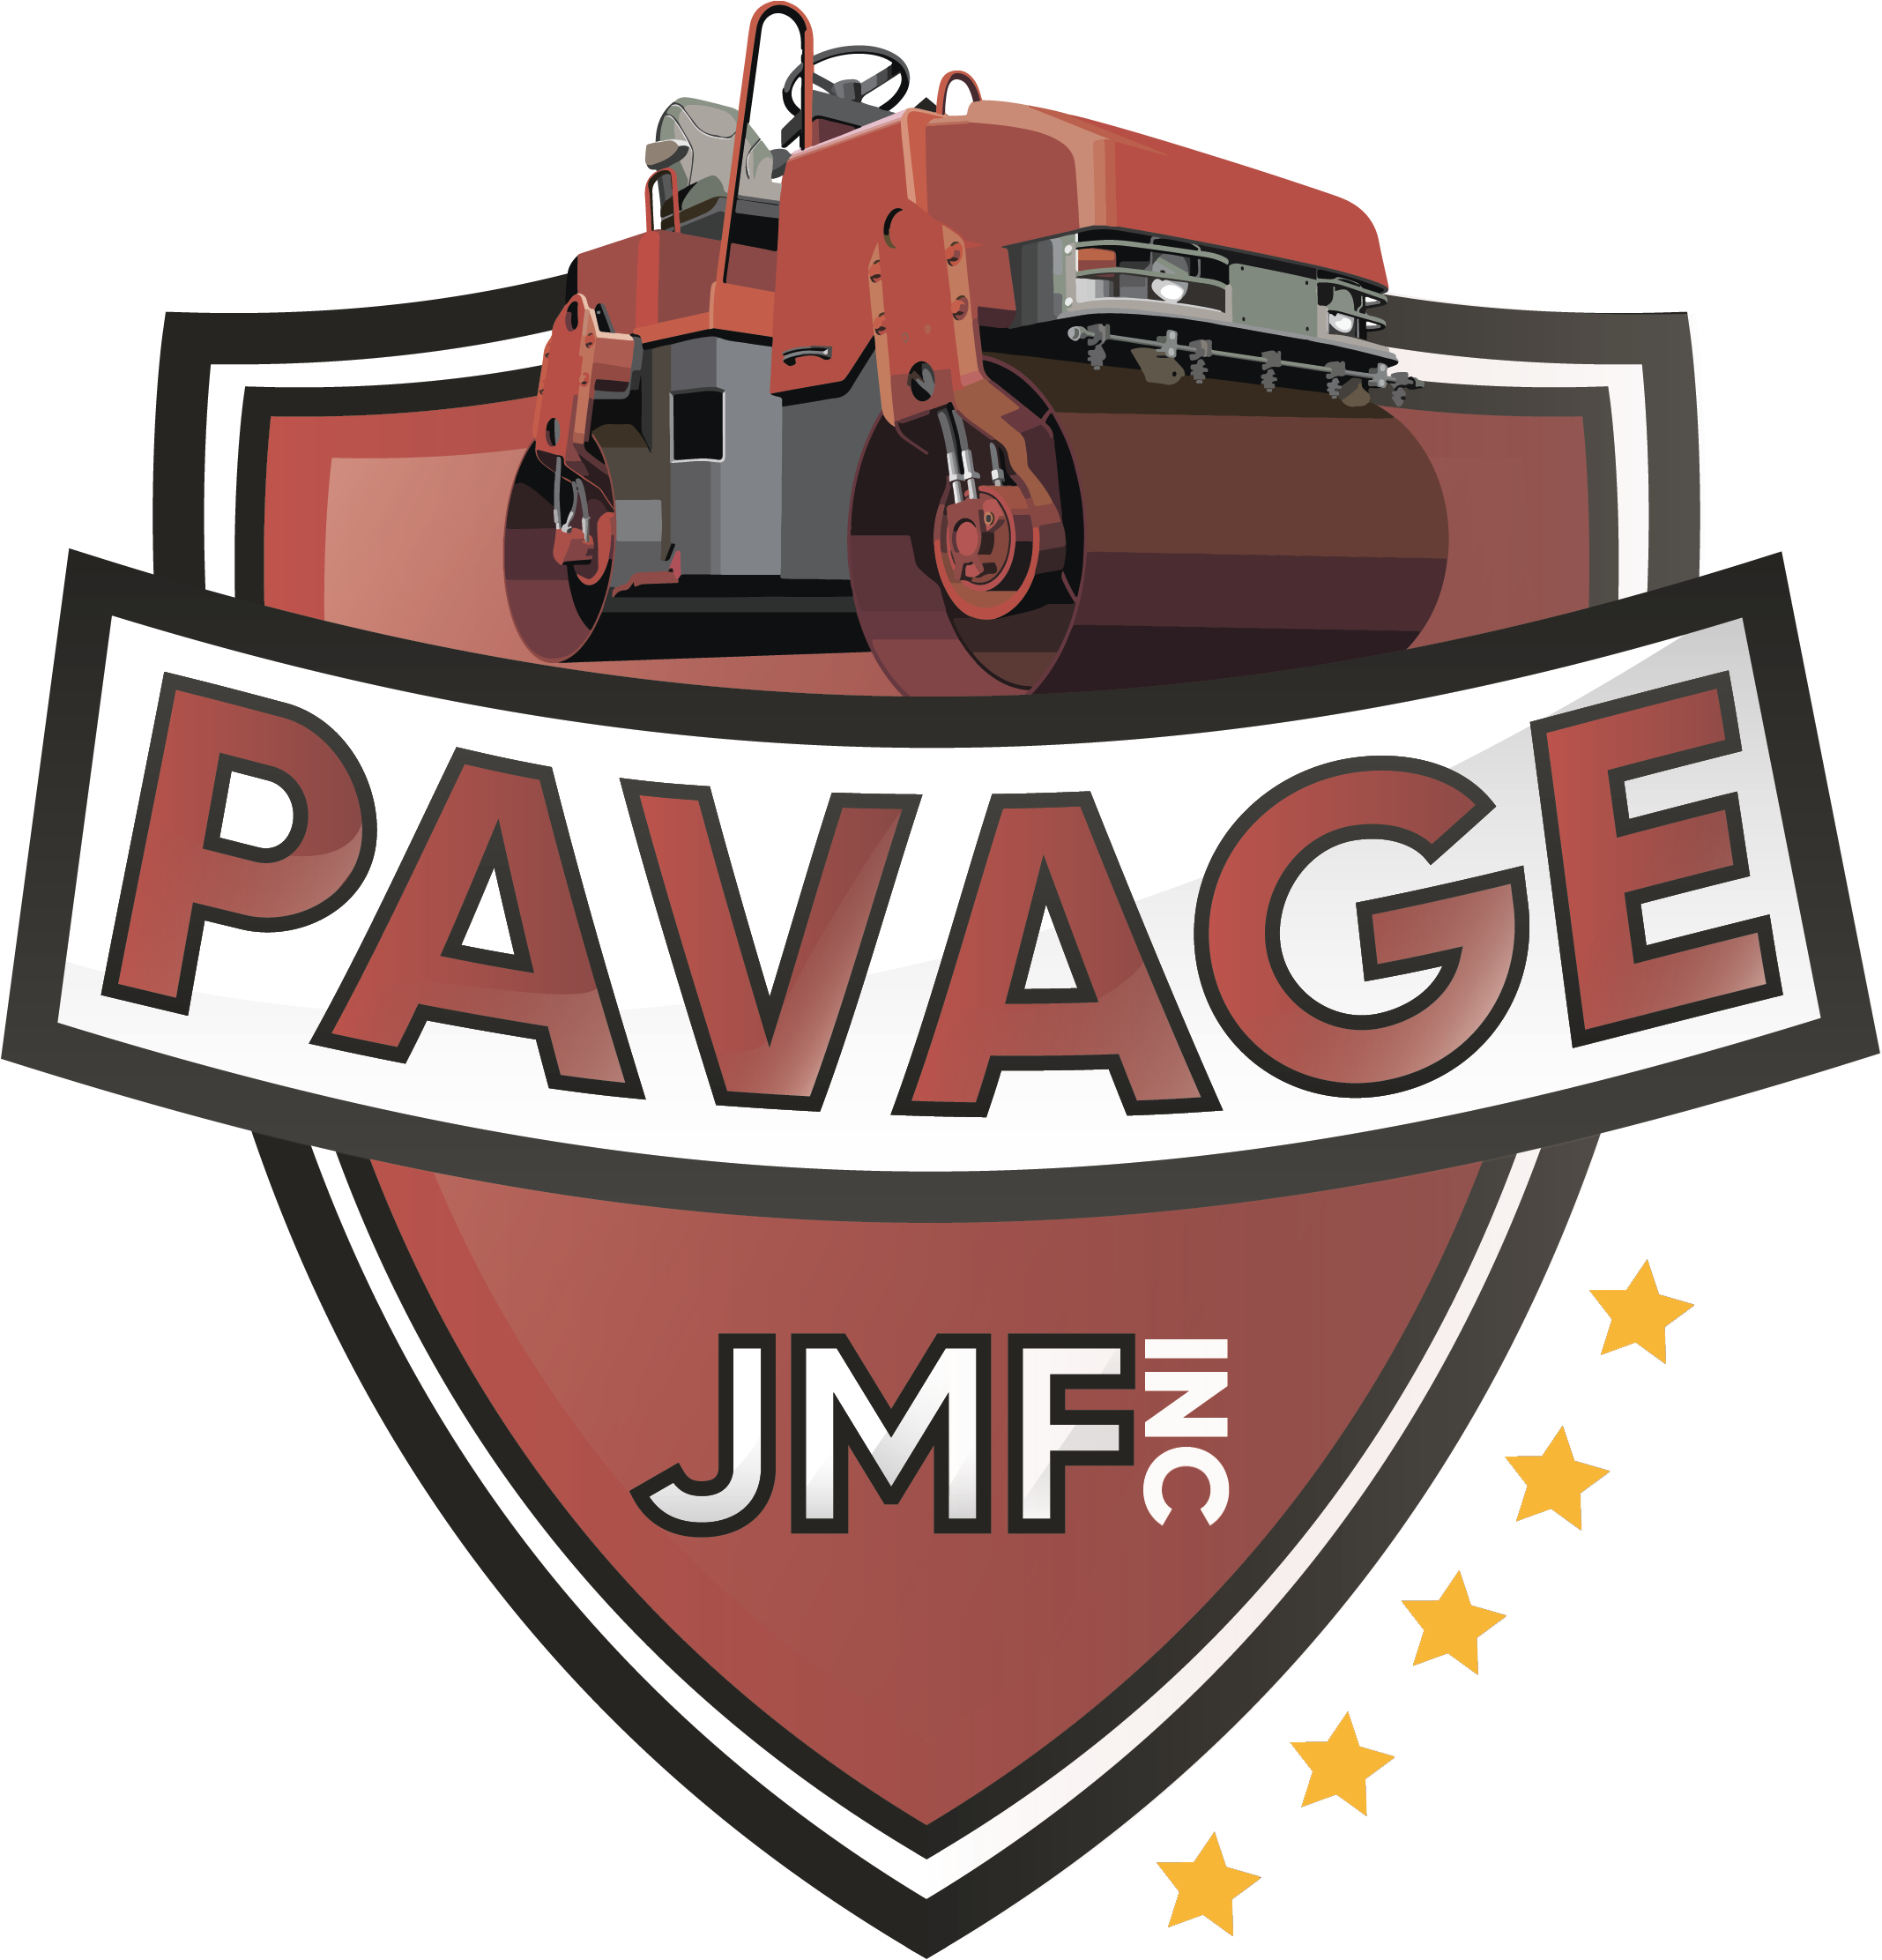 En Affaires Depuis 2007, Pavage Jmf Est La Solution - Pavage Jmf (2334x2422)